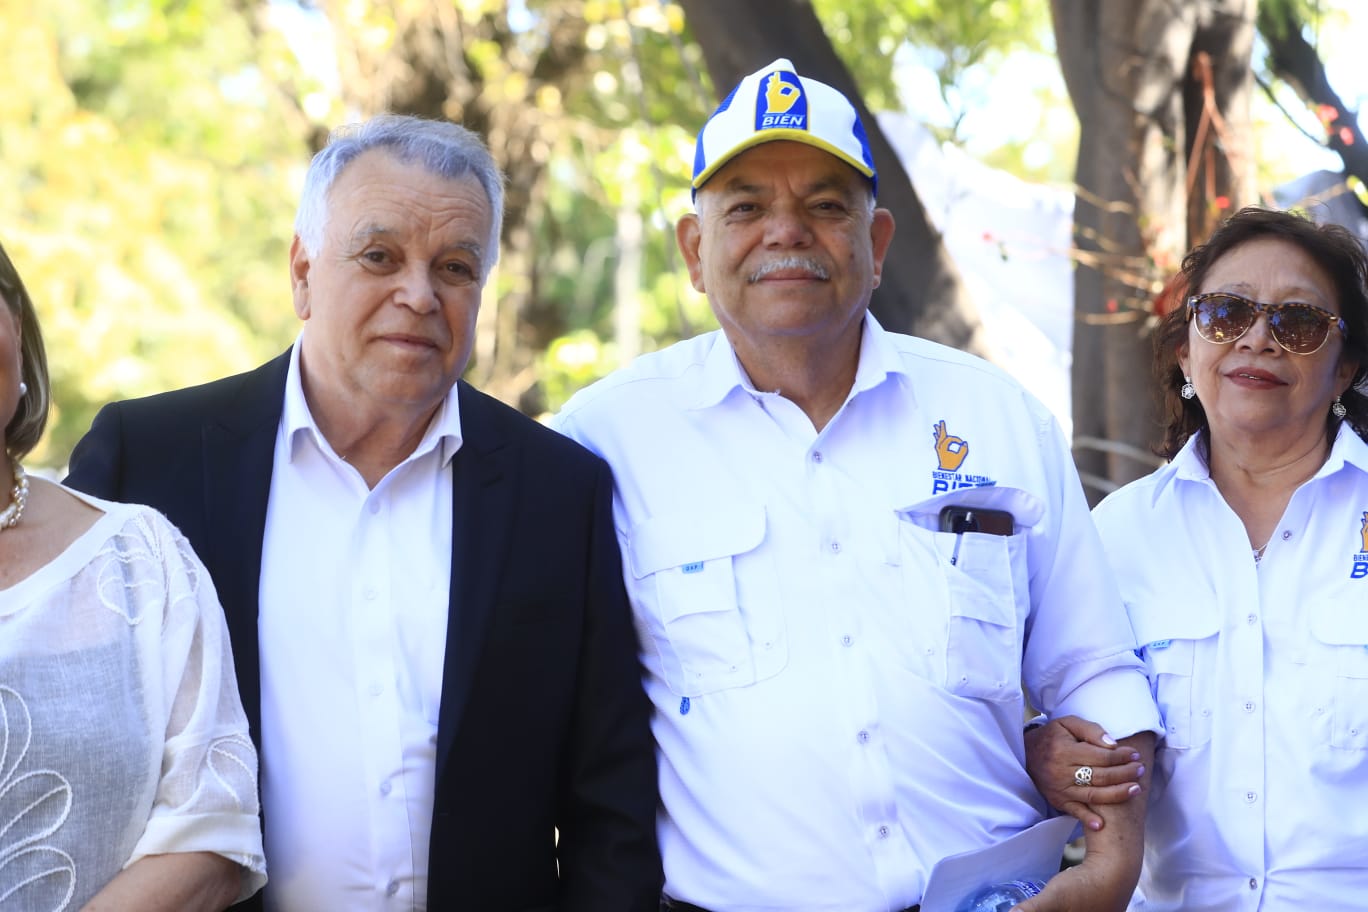 Giovanni Reyes Ortiz, doctor en Economía, y Óscar Figueroa, ingeniero agrónomo, son el binomio presidencial del partido Bienestar Nacional (Bien). (Foto Prensa Libre: María José Bonilla)